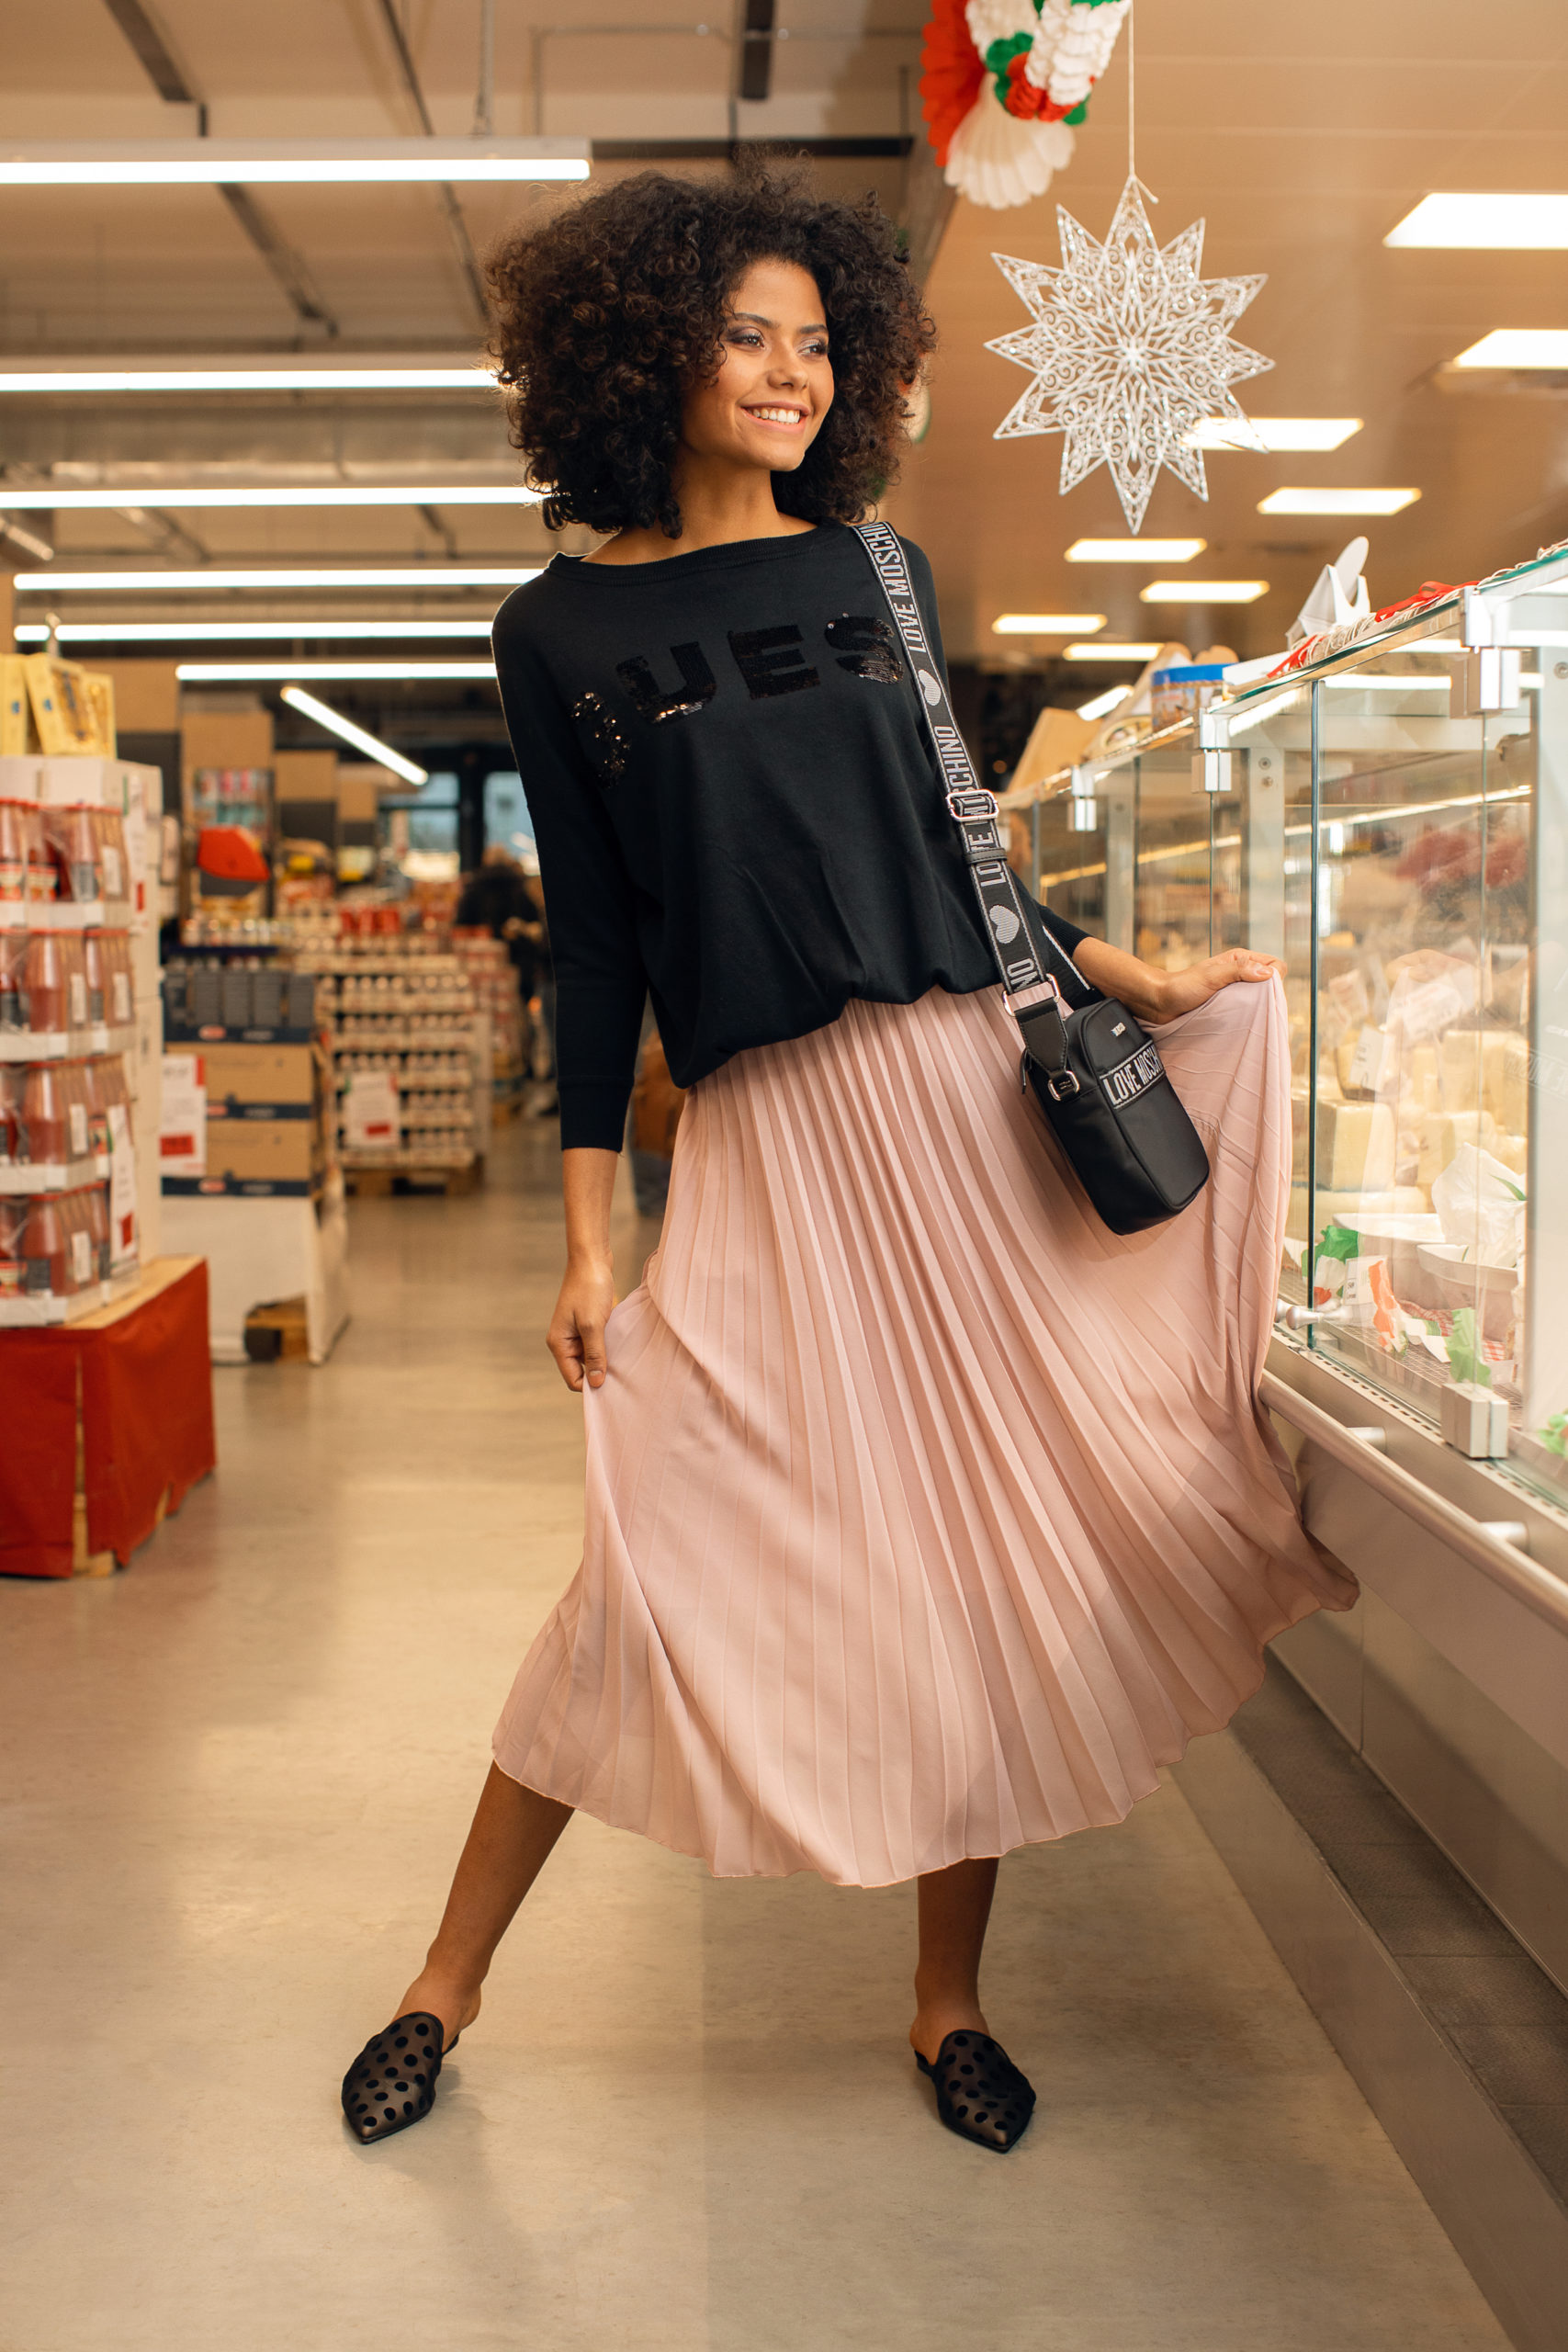 Modelfashionportrait im Supermarkt